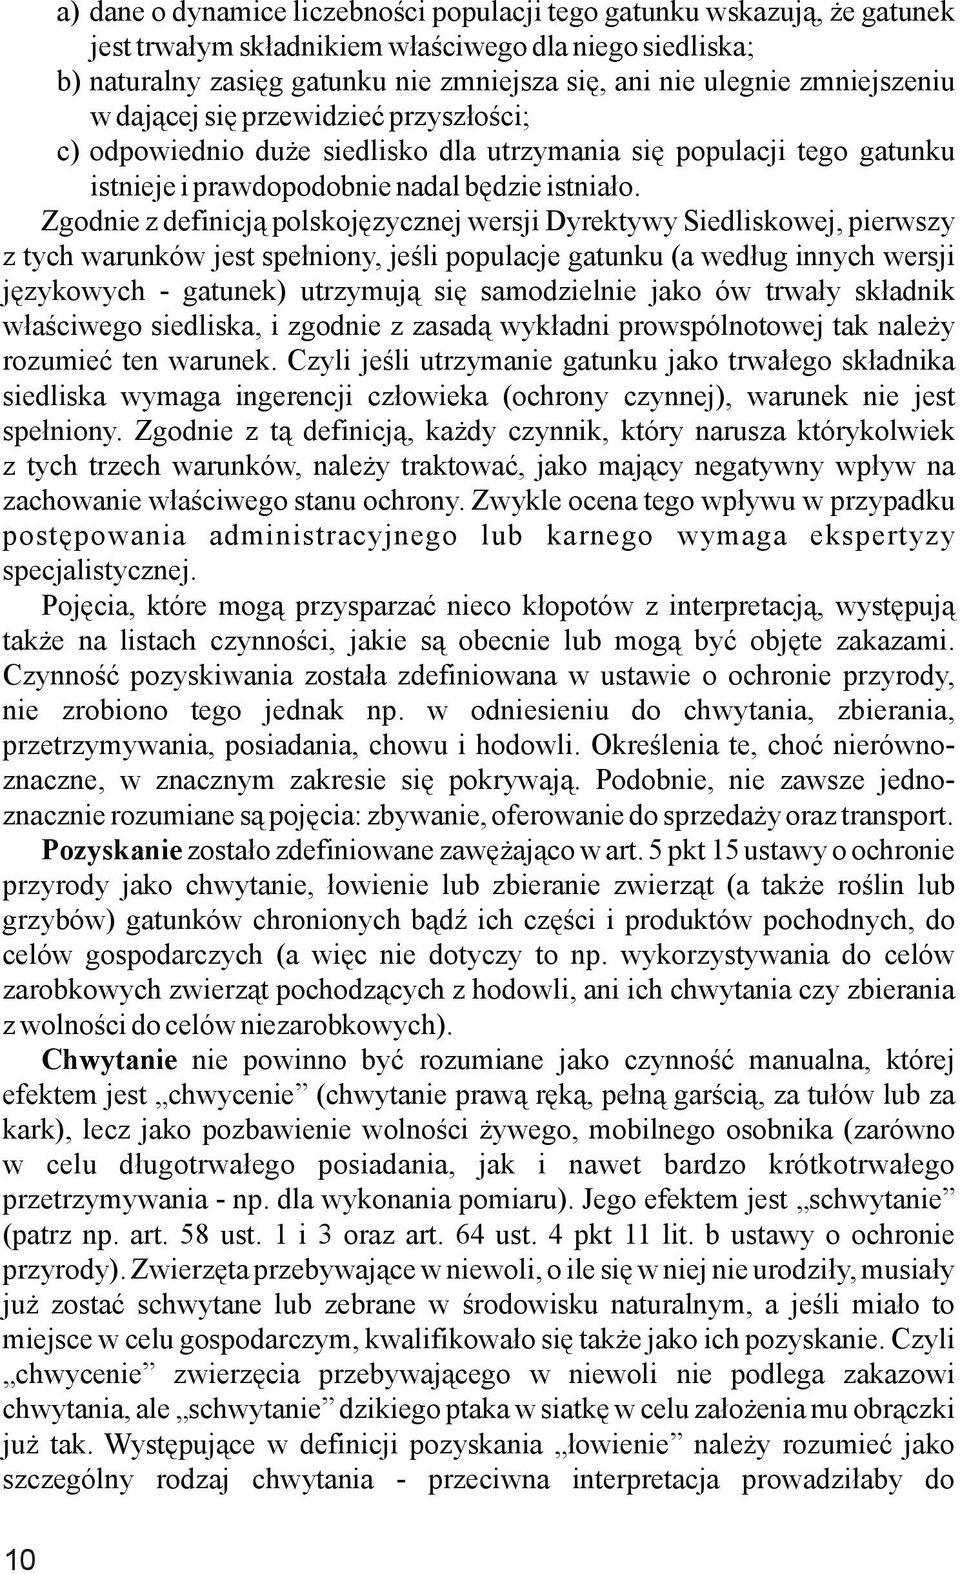 Zgodnie z definicją polskojęzycznej wersji Dyrektywy Siedliskowej, pierwszy z tych warunków jest spełniony, jeśli populacje gatunku (a według innych wersji językowych - gatunek) utrzymują się